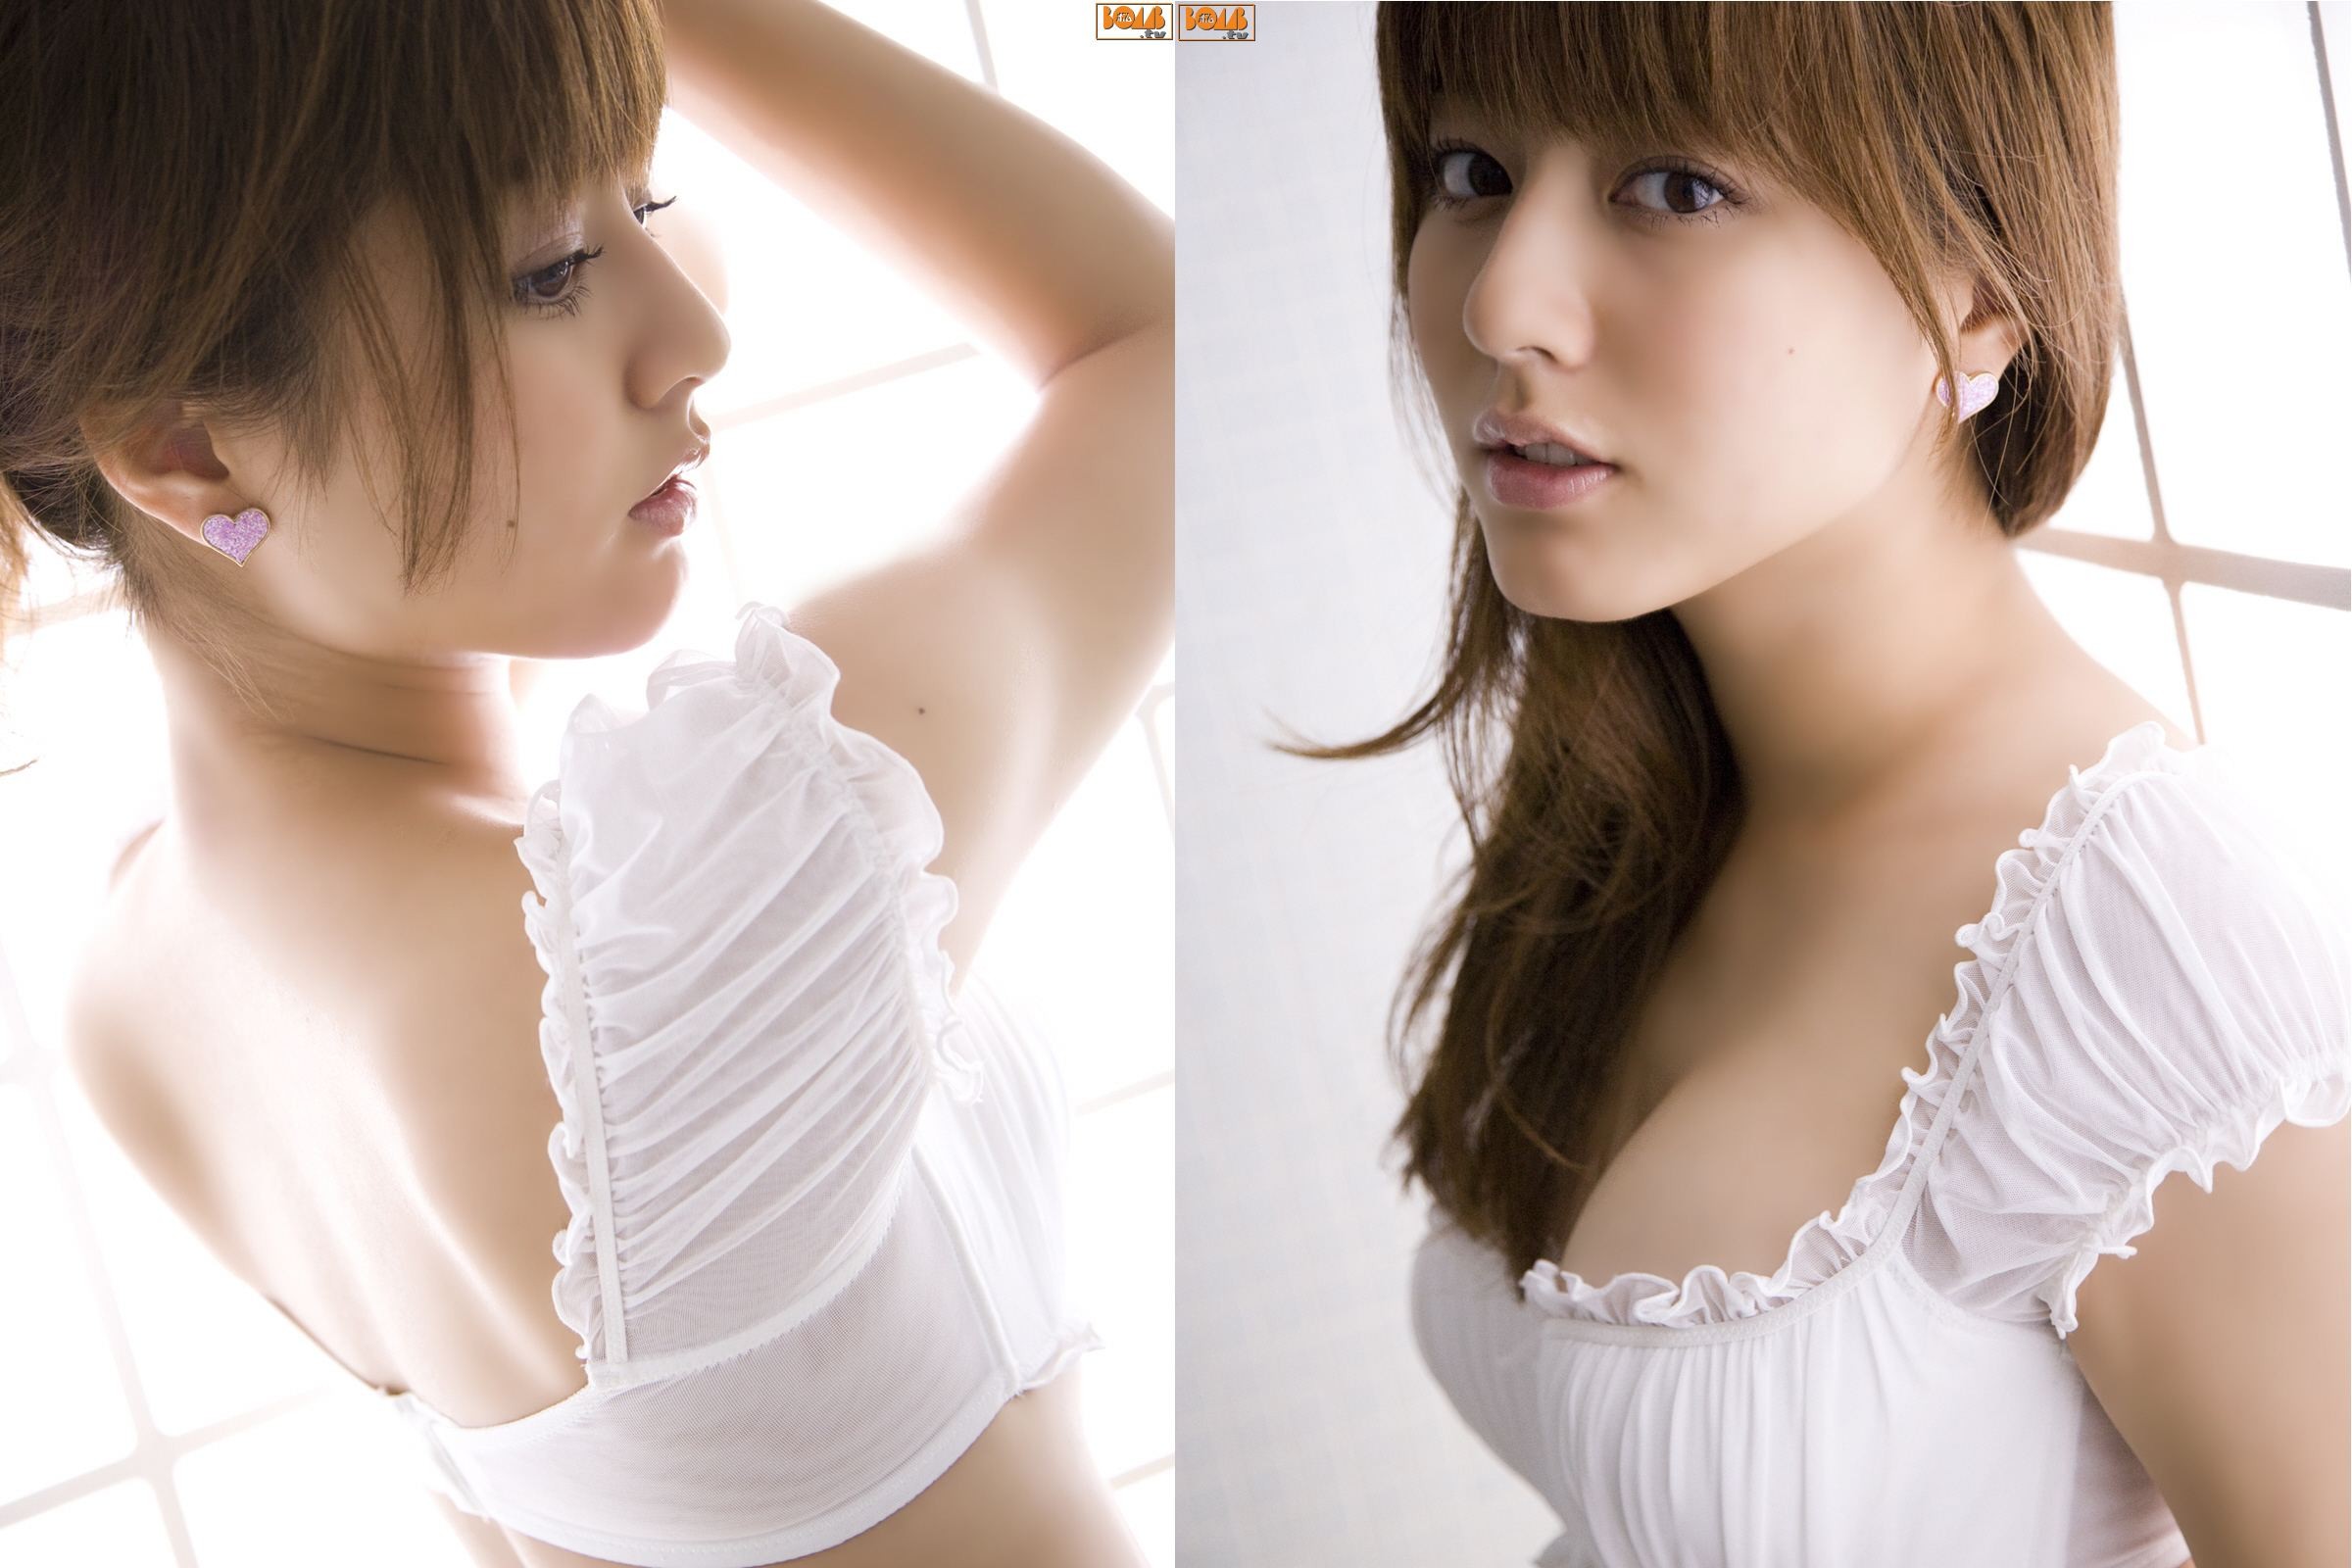 Yumi Sugimoto Women Model Asian Japan 2400x1600